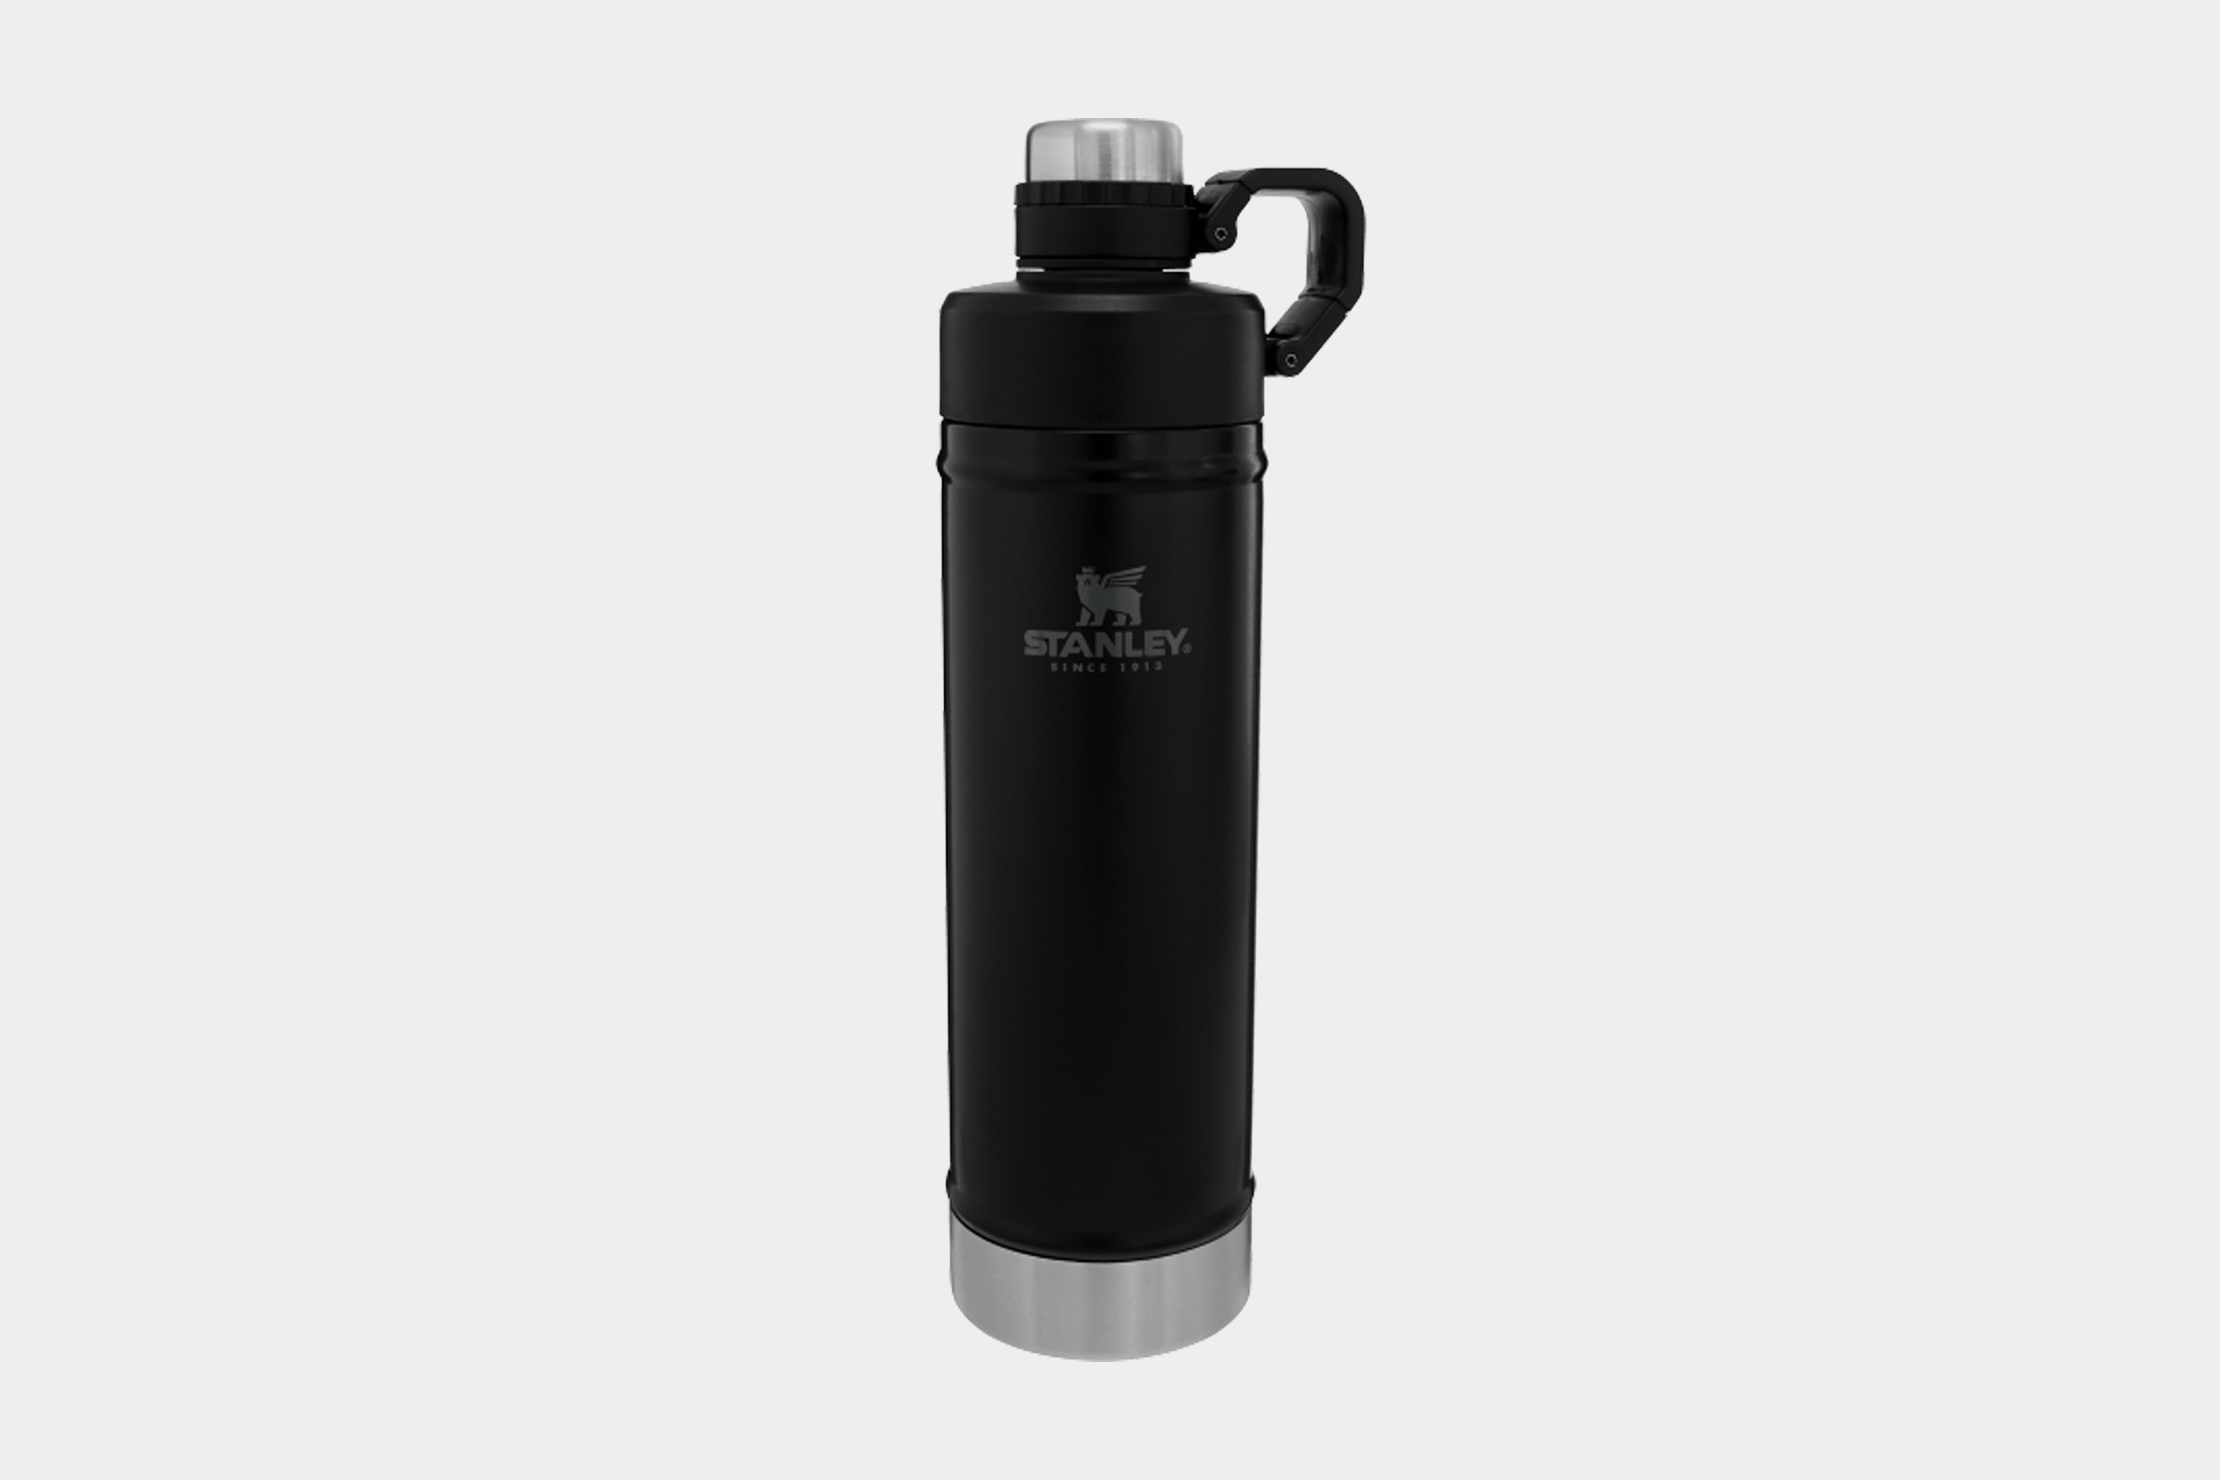 https://cdn.packhacker.com/2020/05/5ae7268e-stanley-classic-easy-clean-water-bottle-25-oz.jpg